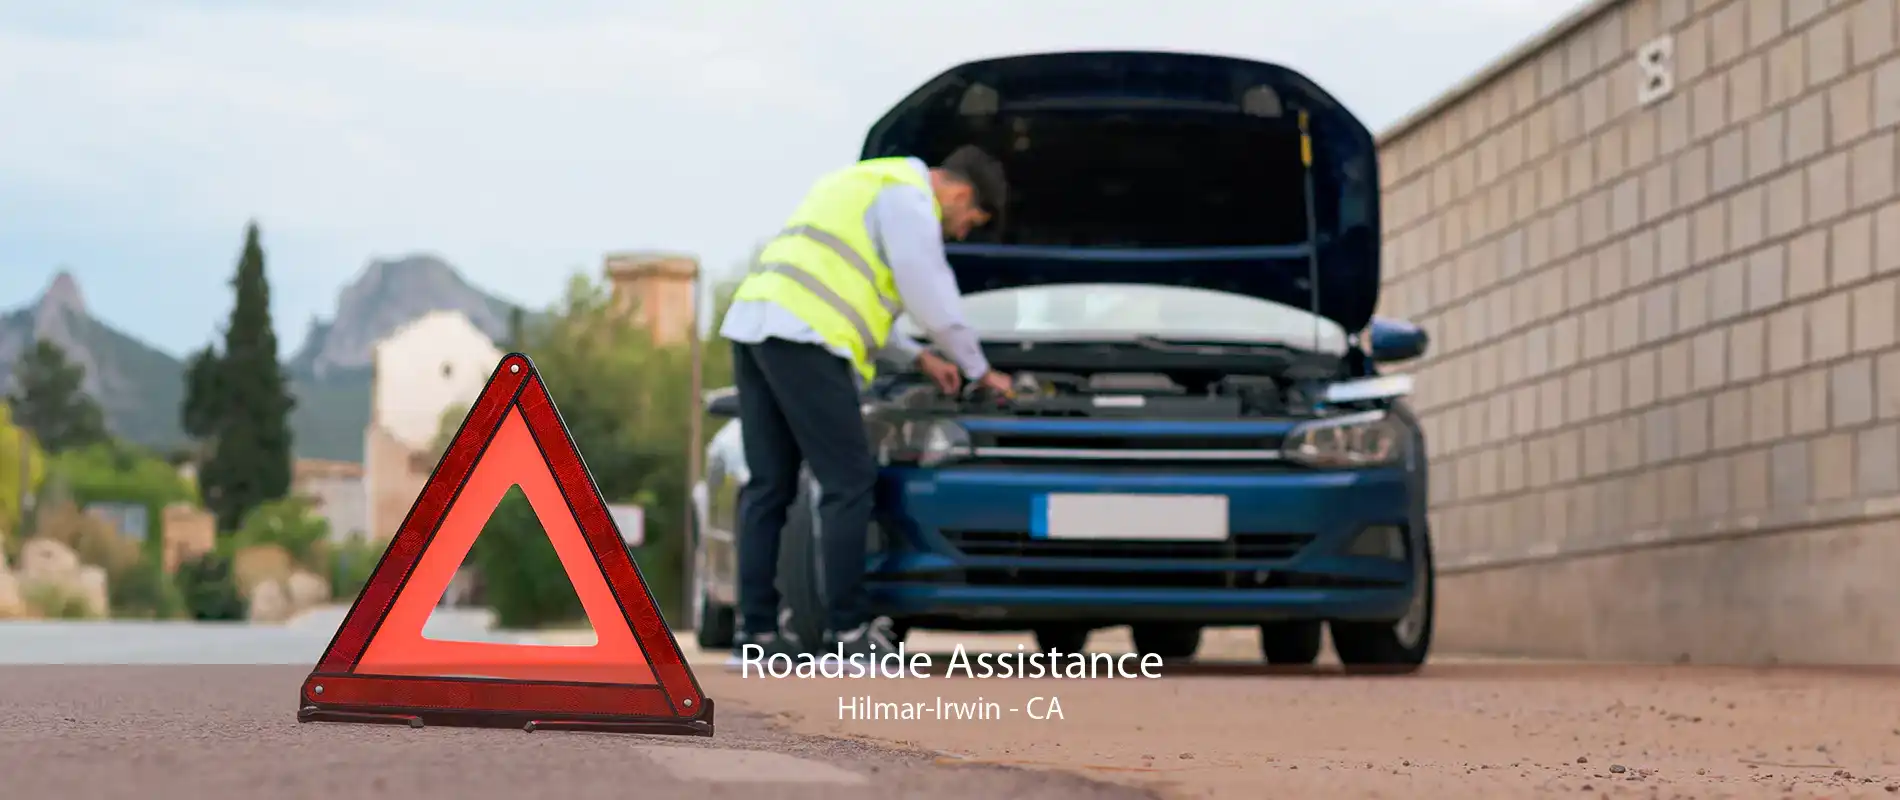 Roadside Assistance Hilmar-Irwin - CA